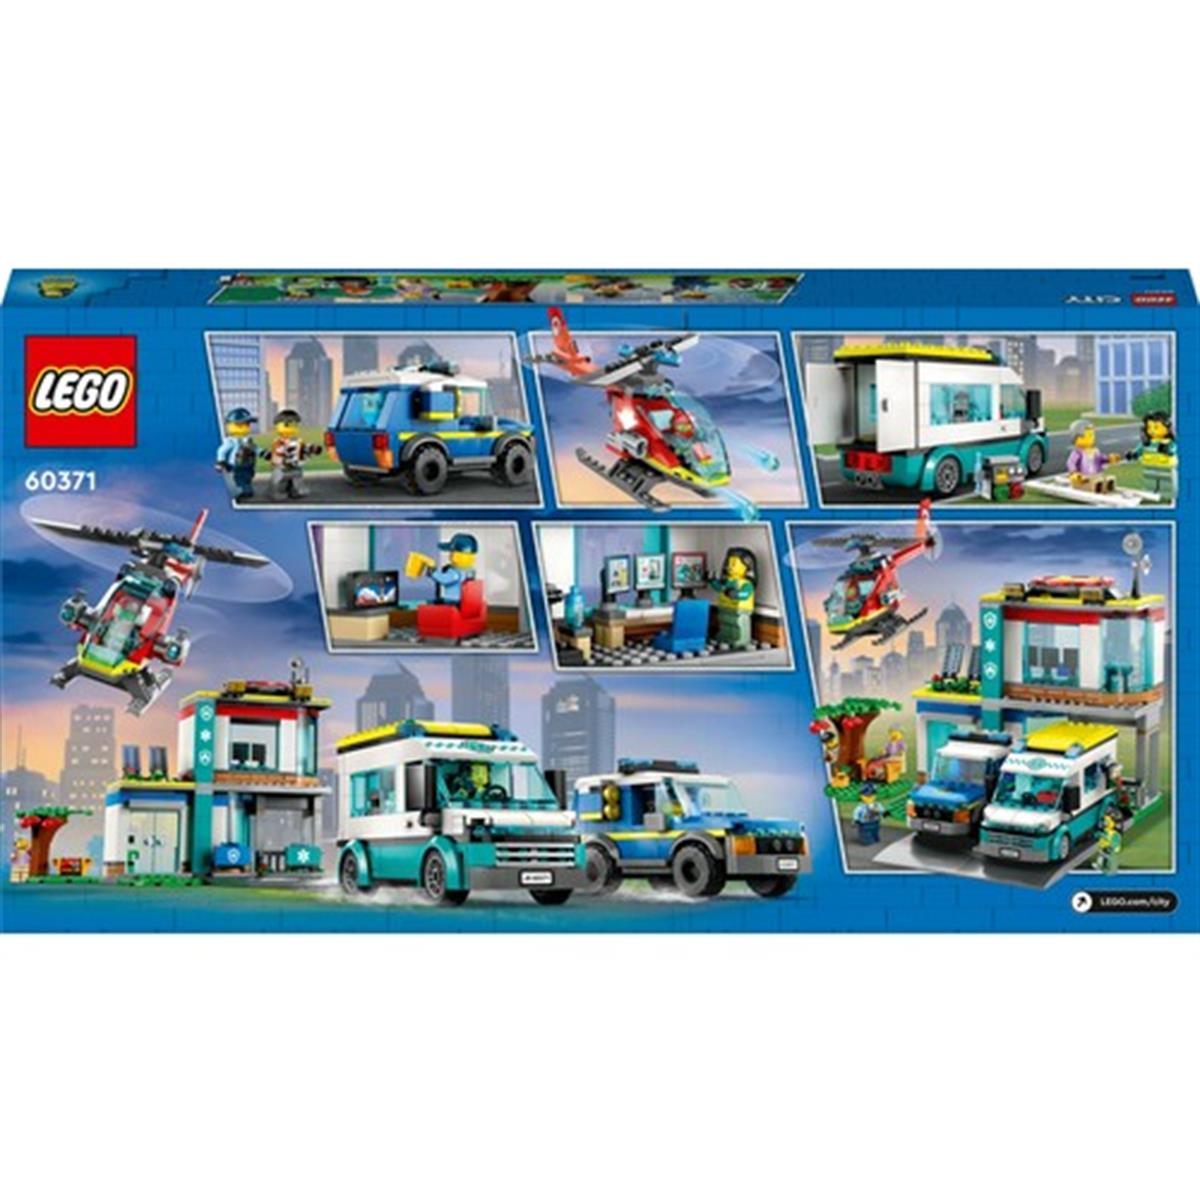 LEGO® City Acil Durum Araçları Merkezi 60371 - 6 Yaş ve Üzeri Çocuklar Için  Polis, Itfaiye